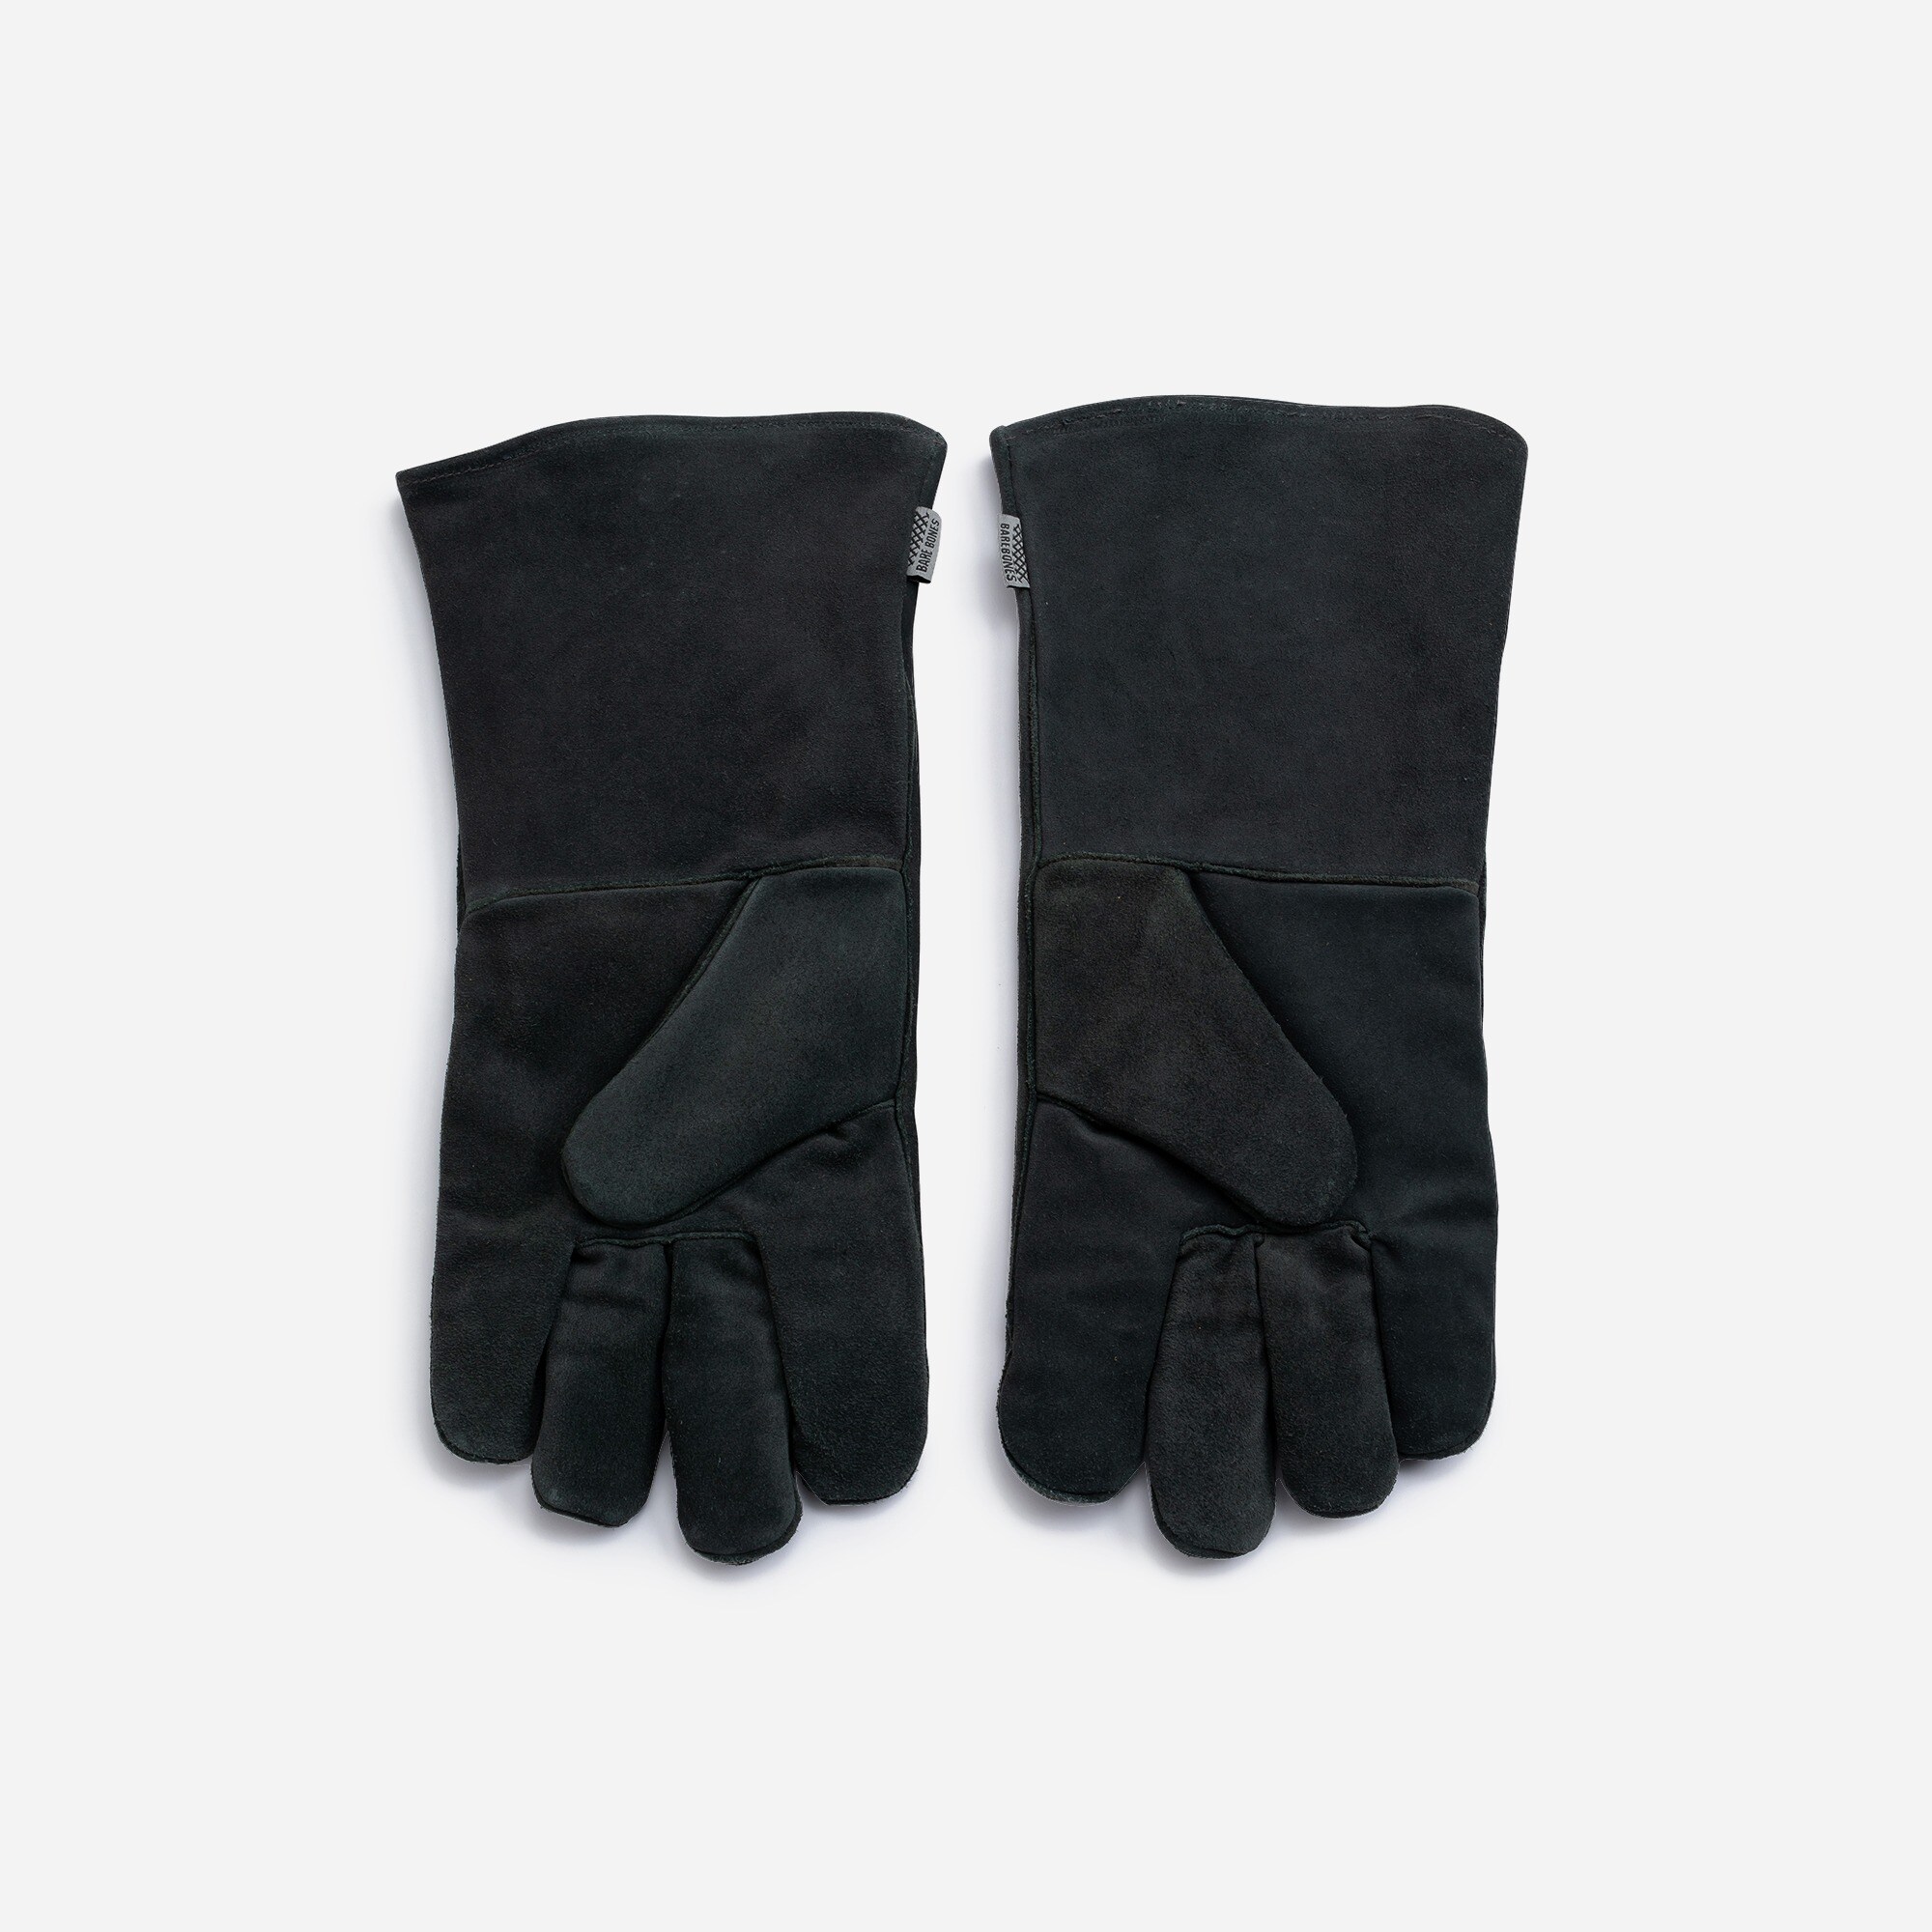  Barebones open-fire gloves